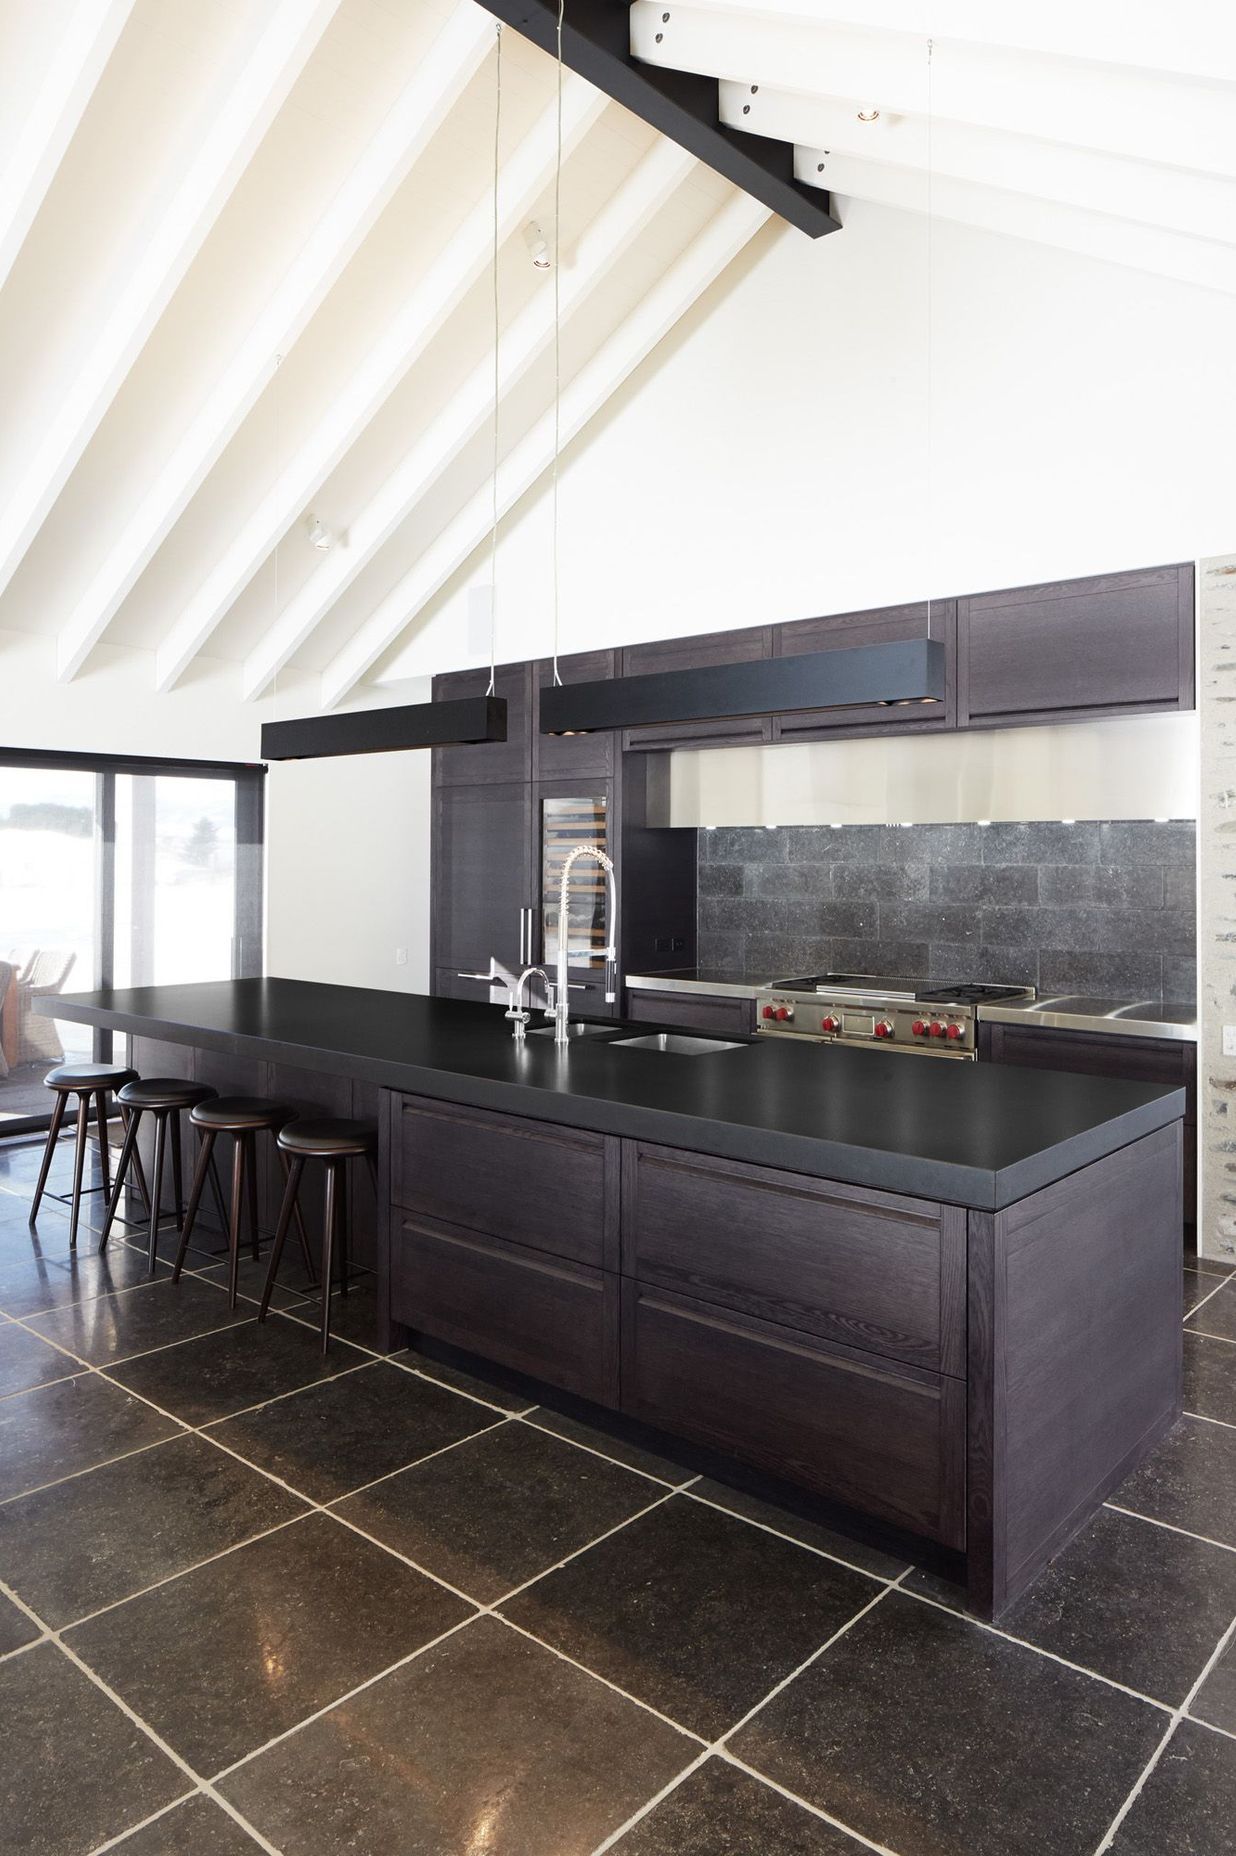 Award winning kitchen by Ingrid Geldof Design